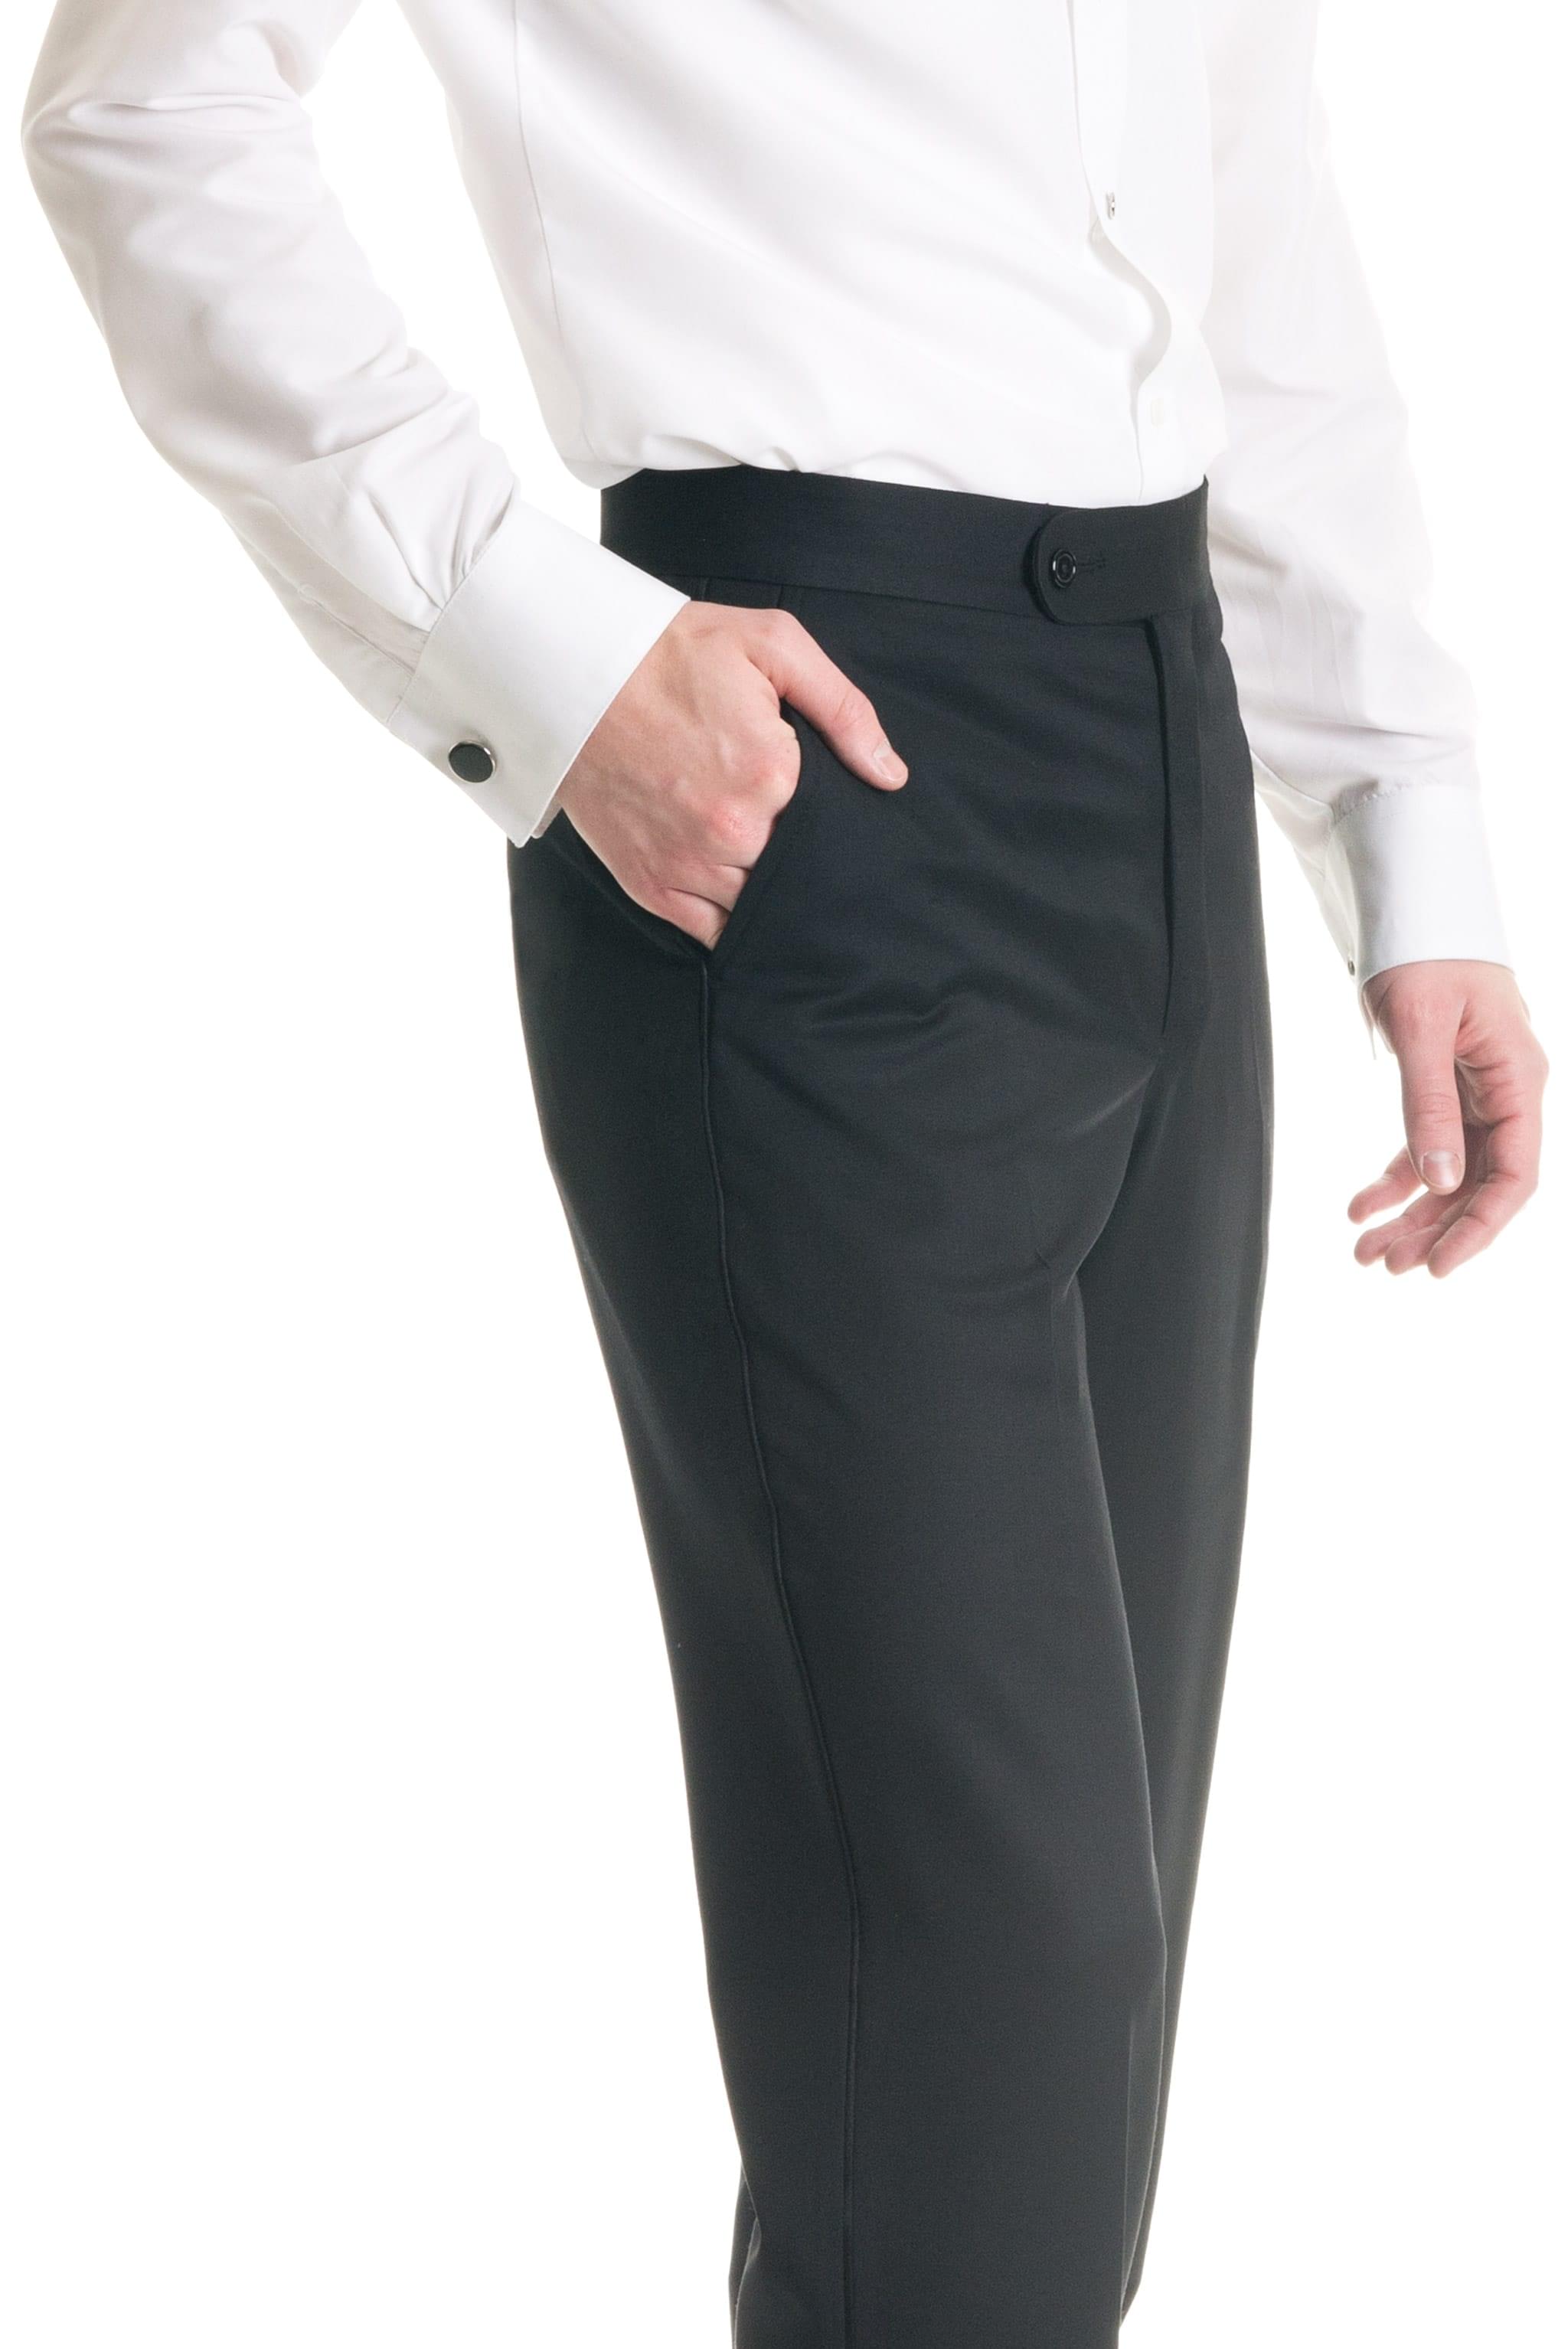 Men office Black Casual |Men formal pants| Men Party pants SAINLY